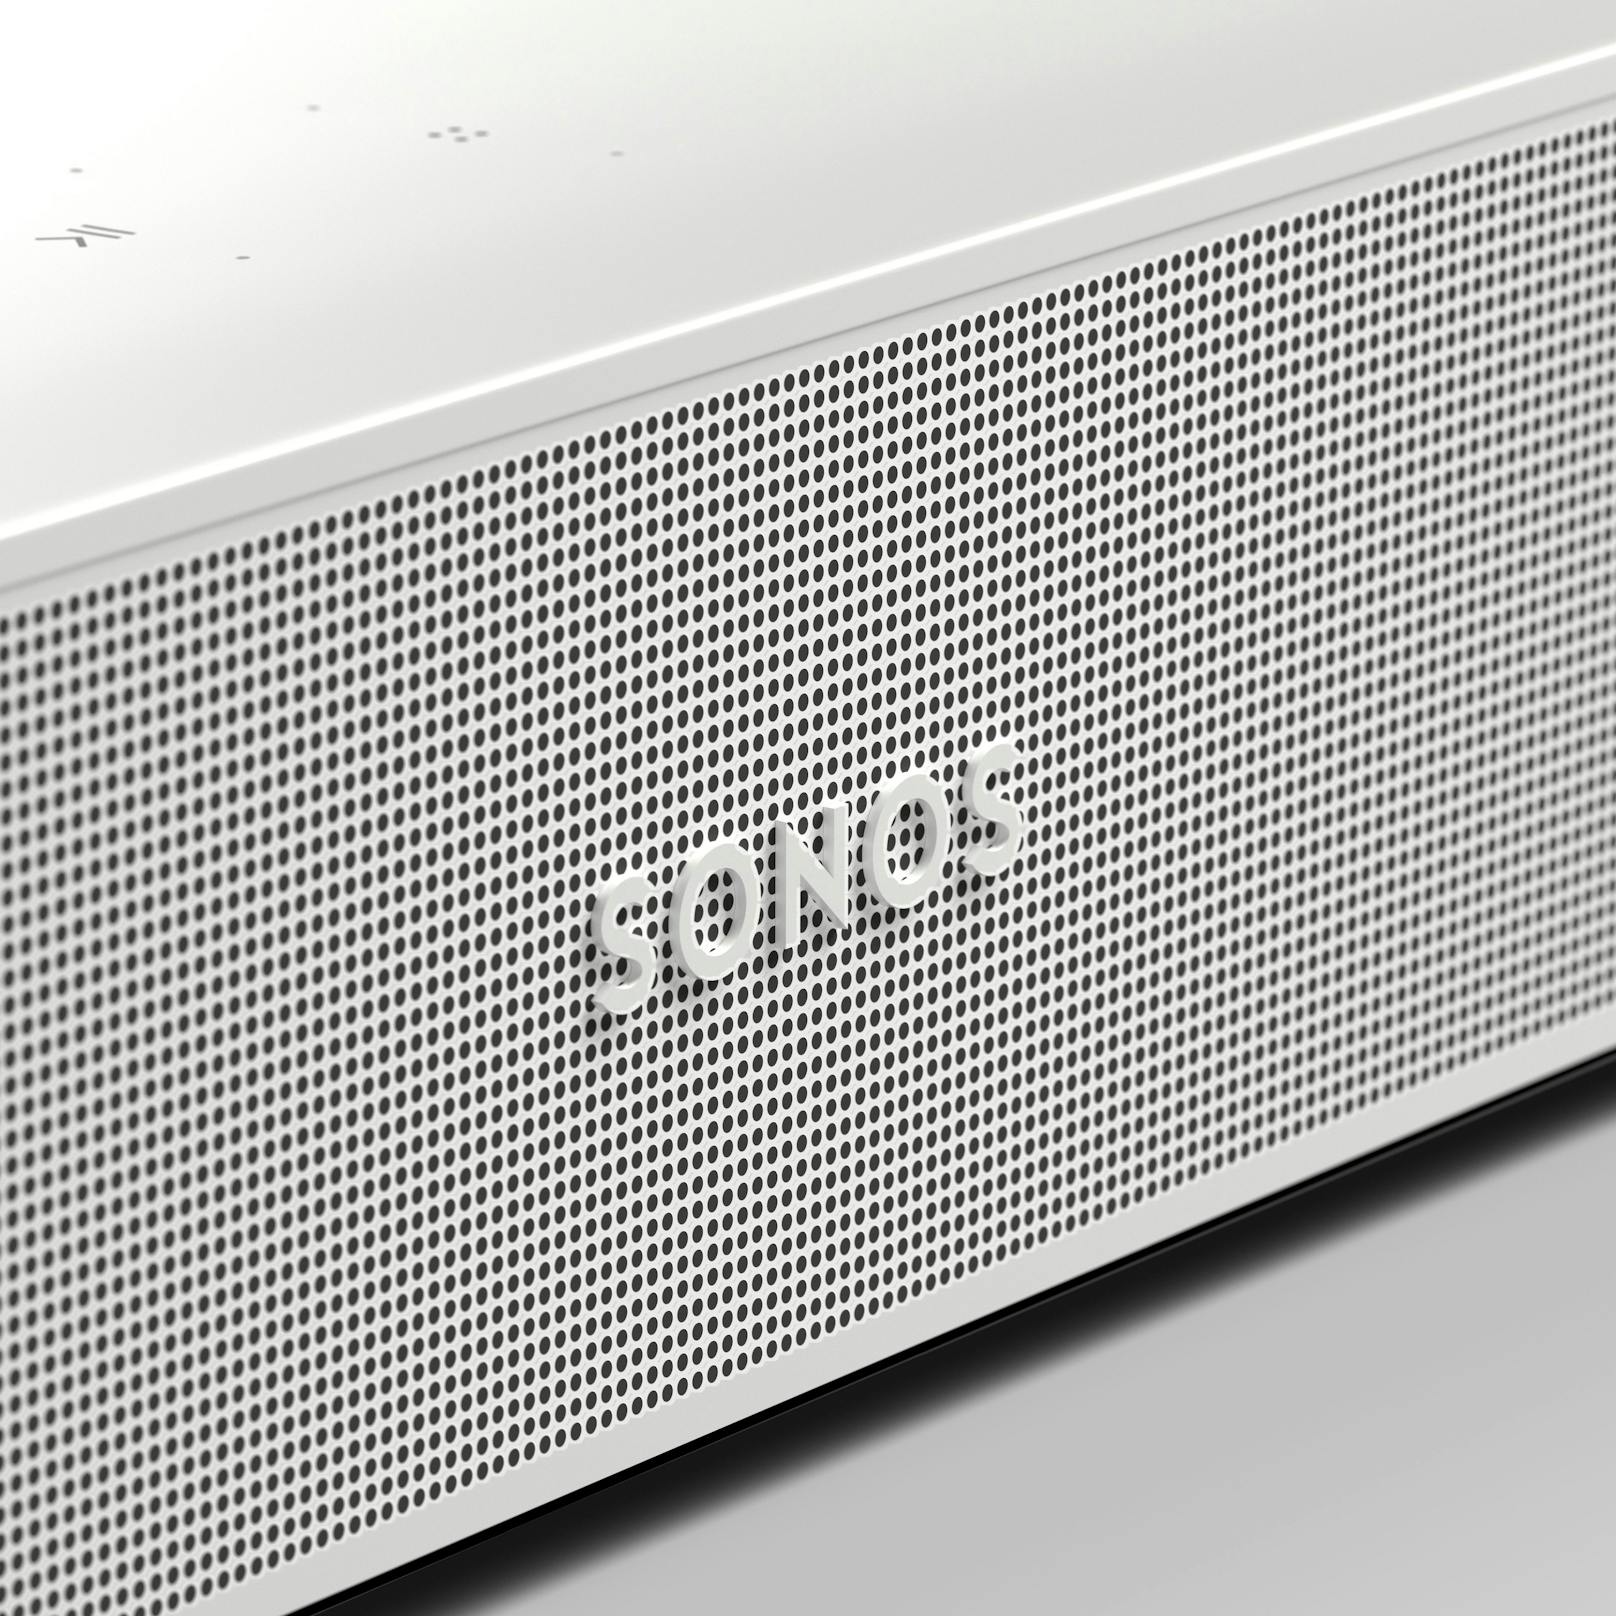 Die Sonos Beam besitzt ein überarbeitetes, perforiertes Polycarbonat-Gitter. Das Unternehmen verweist zudem auf die nachhaltige Verpackung mit "unbeschichtetem Papier und einem Karton aus 97% recyclebarem Papier ohne Einwegplastik".&nbsp;